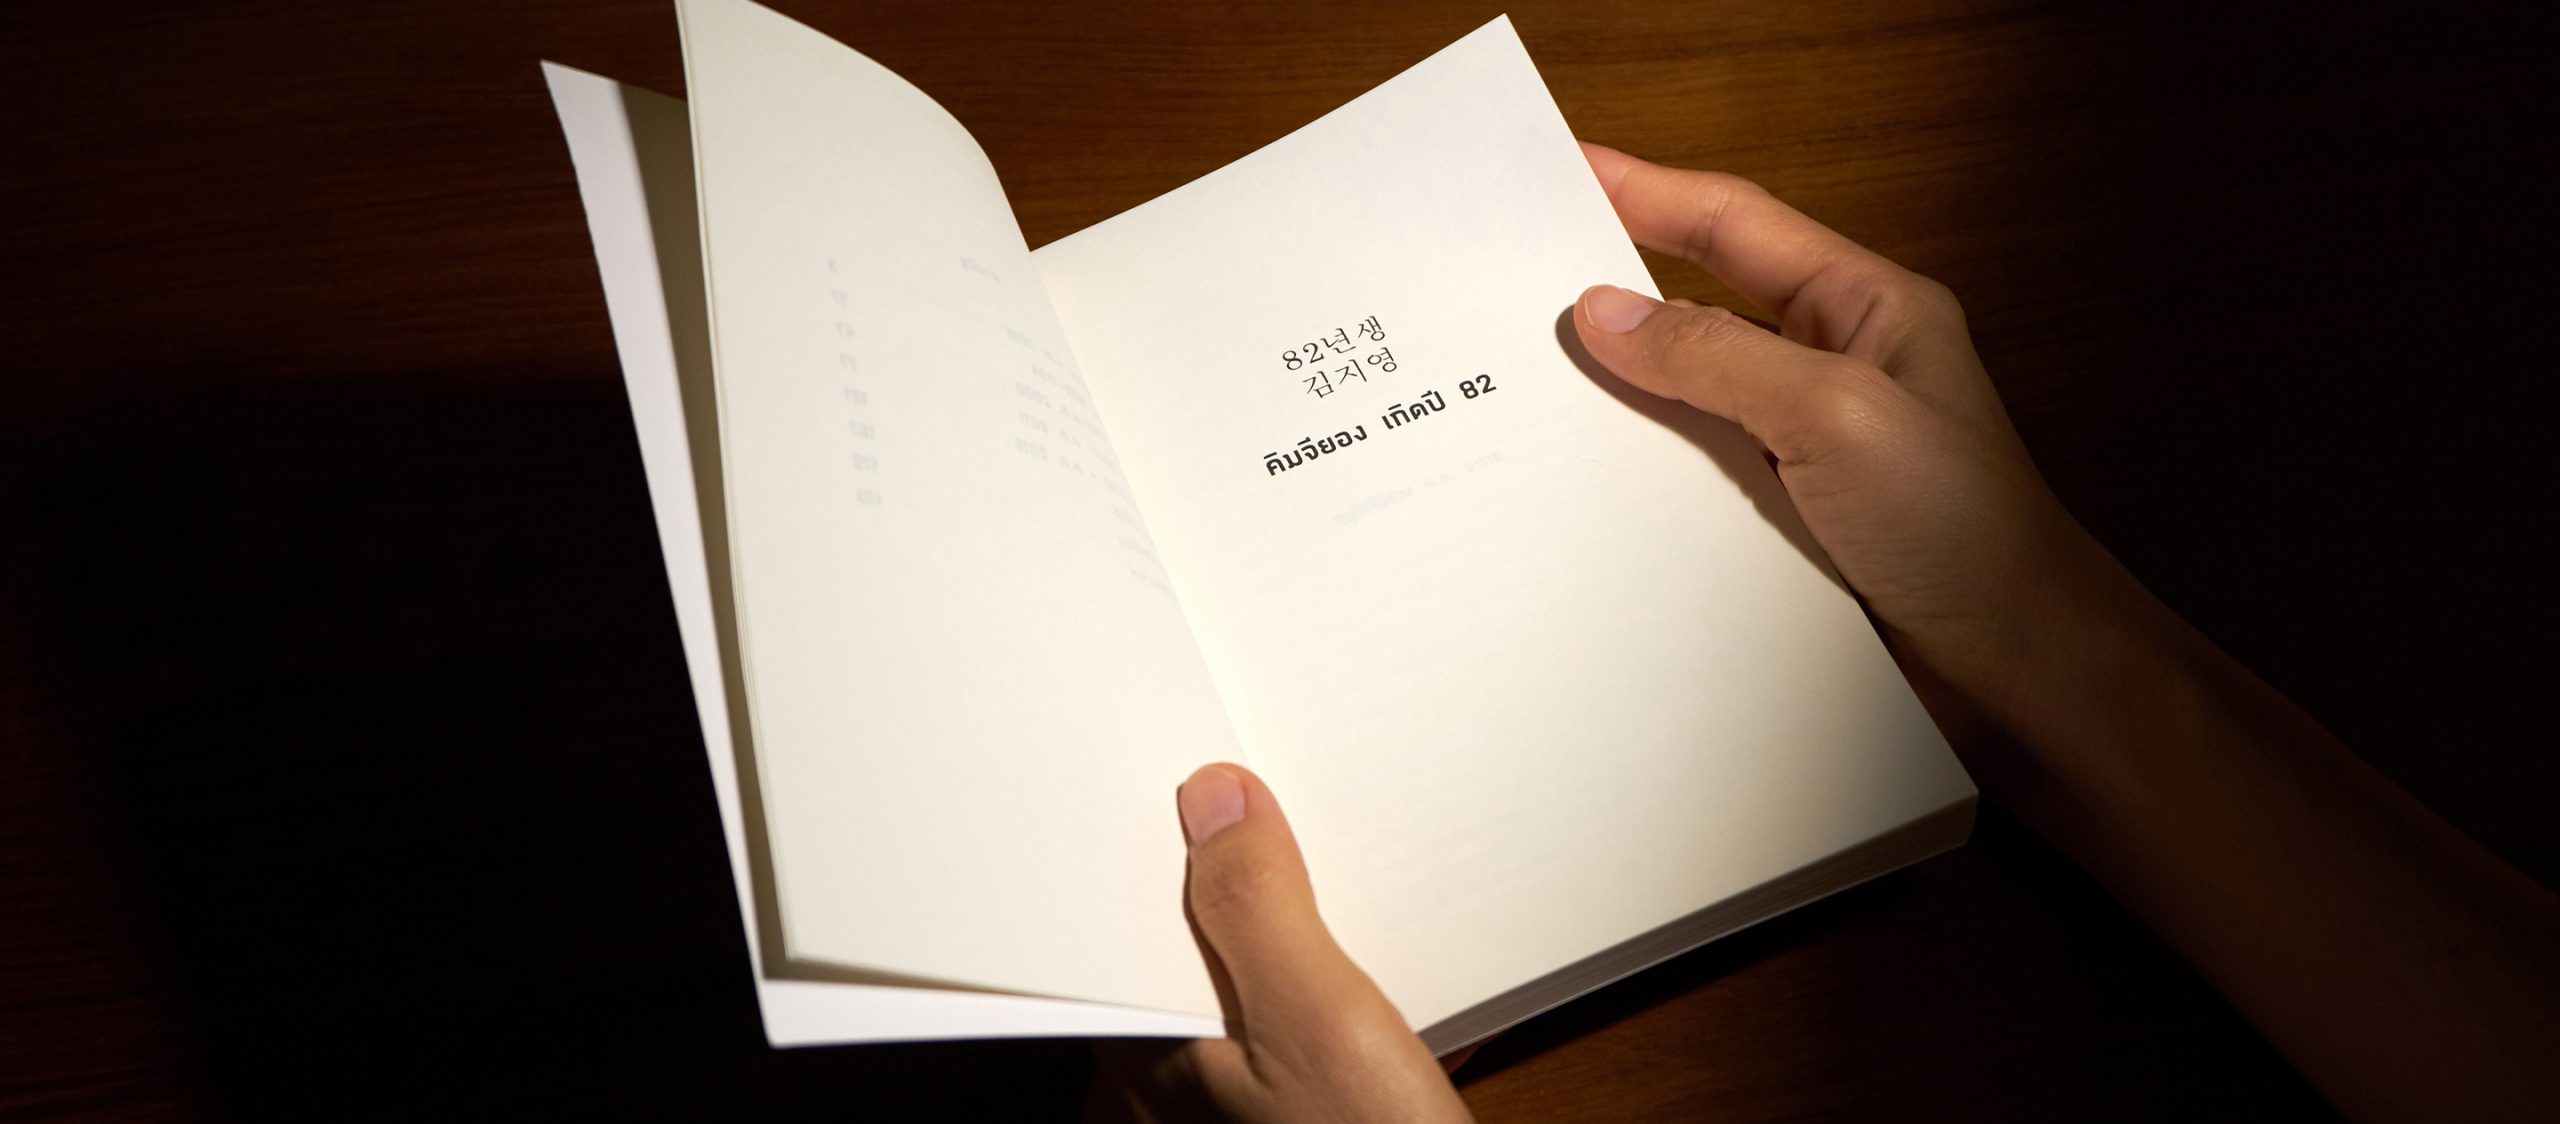 เพราะเราทุกคนคือคิมจียอง &#8216;คิมจียอง เกิดปี 82&#8217; หนังสือแห่งความหวังในสังคมชายเป็นใหญ่